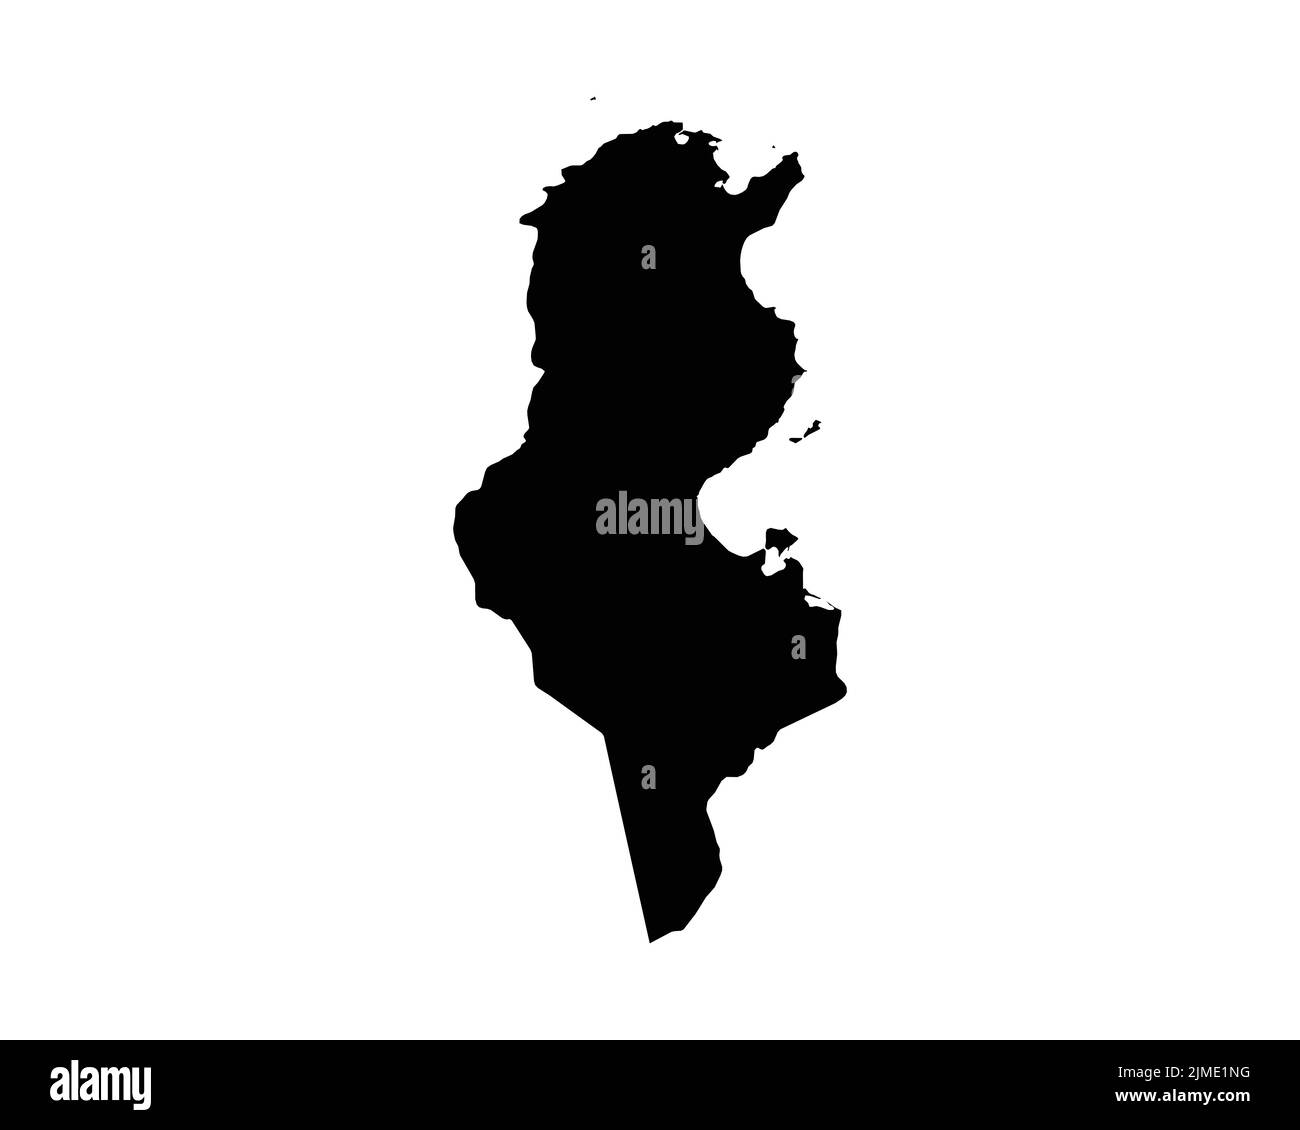 Karte Tunesien. Tunesischer Länderplan. Schwarz-Weiß-Nationalgeographie Umriss Grenze Grenzgebiet Form Vektor Illustration EPS Clipart Stock Vektor